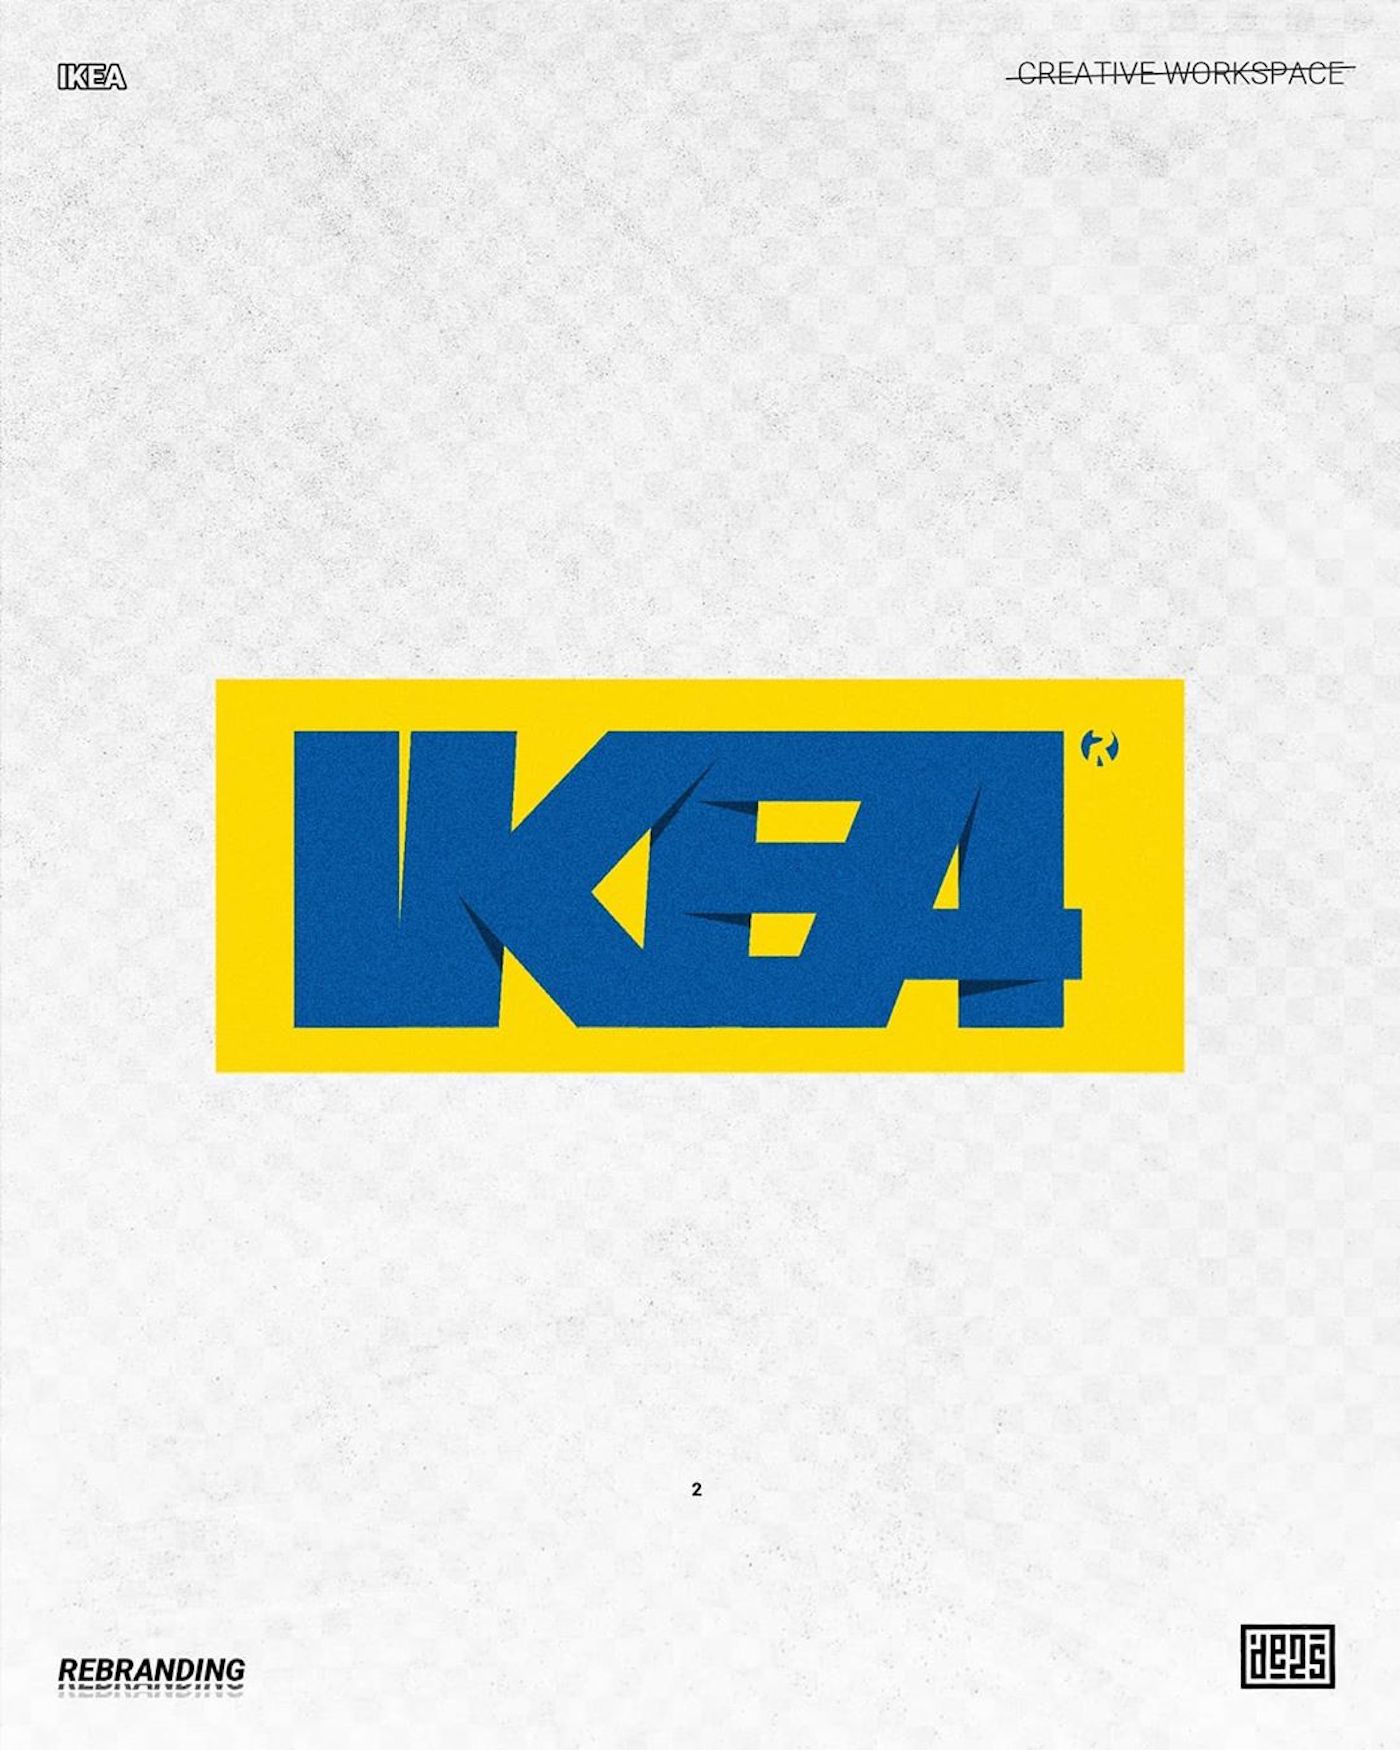 Logo d'IKEA rebrandé par de2s